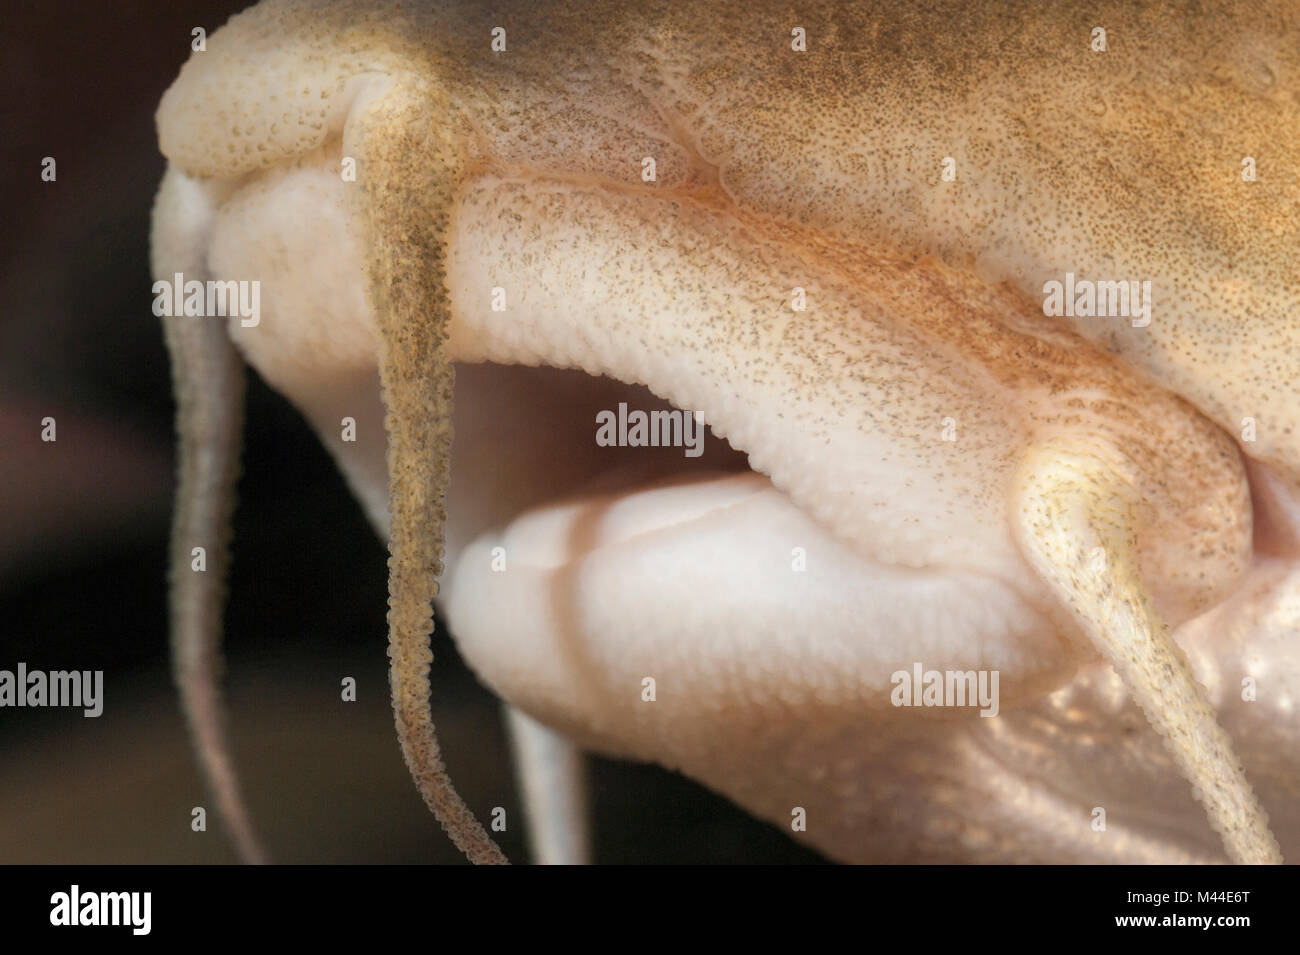 Barbel commun (Barbus barbus). Close-up de la bouche. Allemagne Banque D'Images